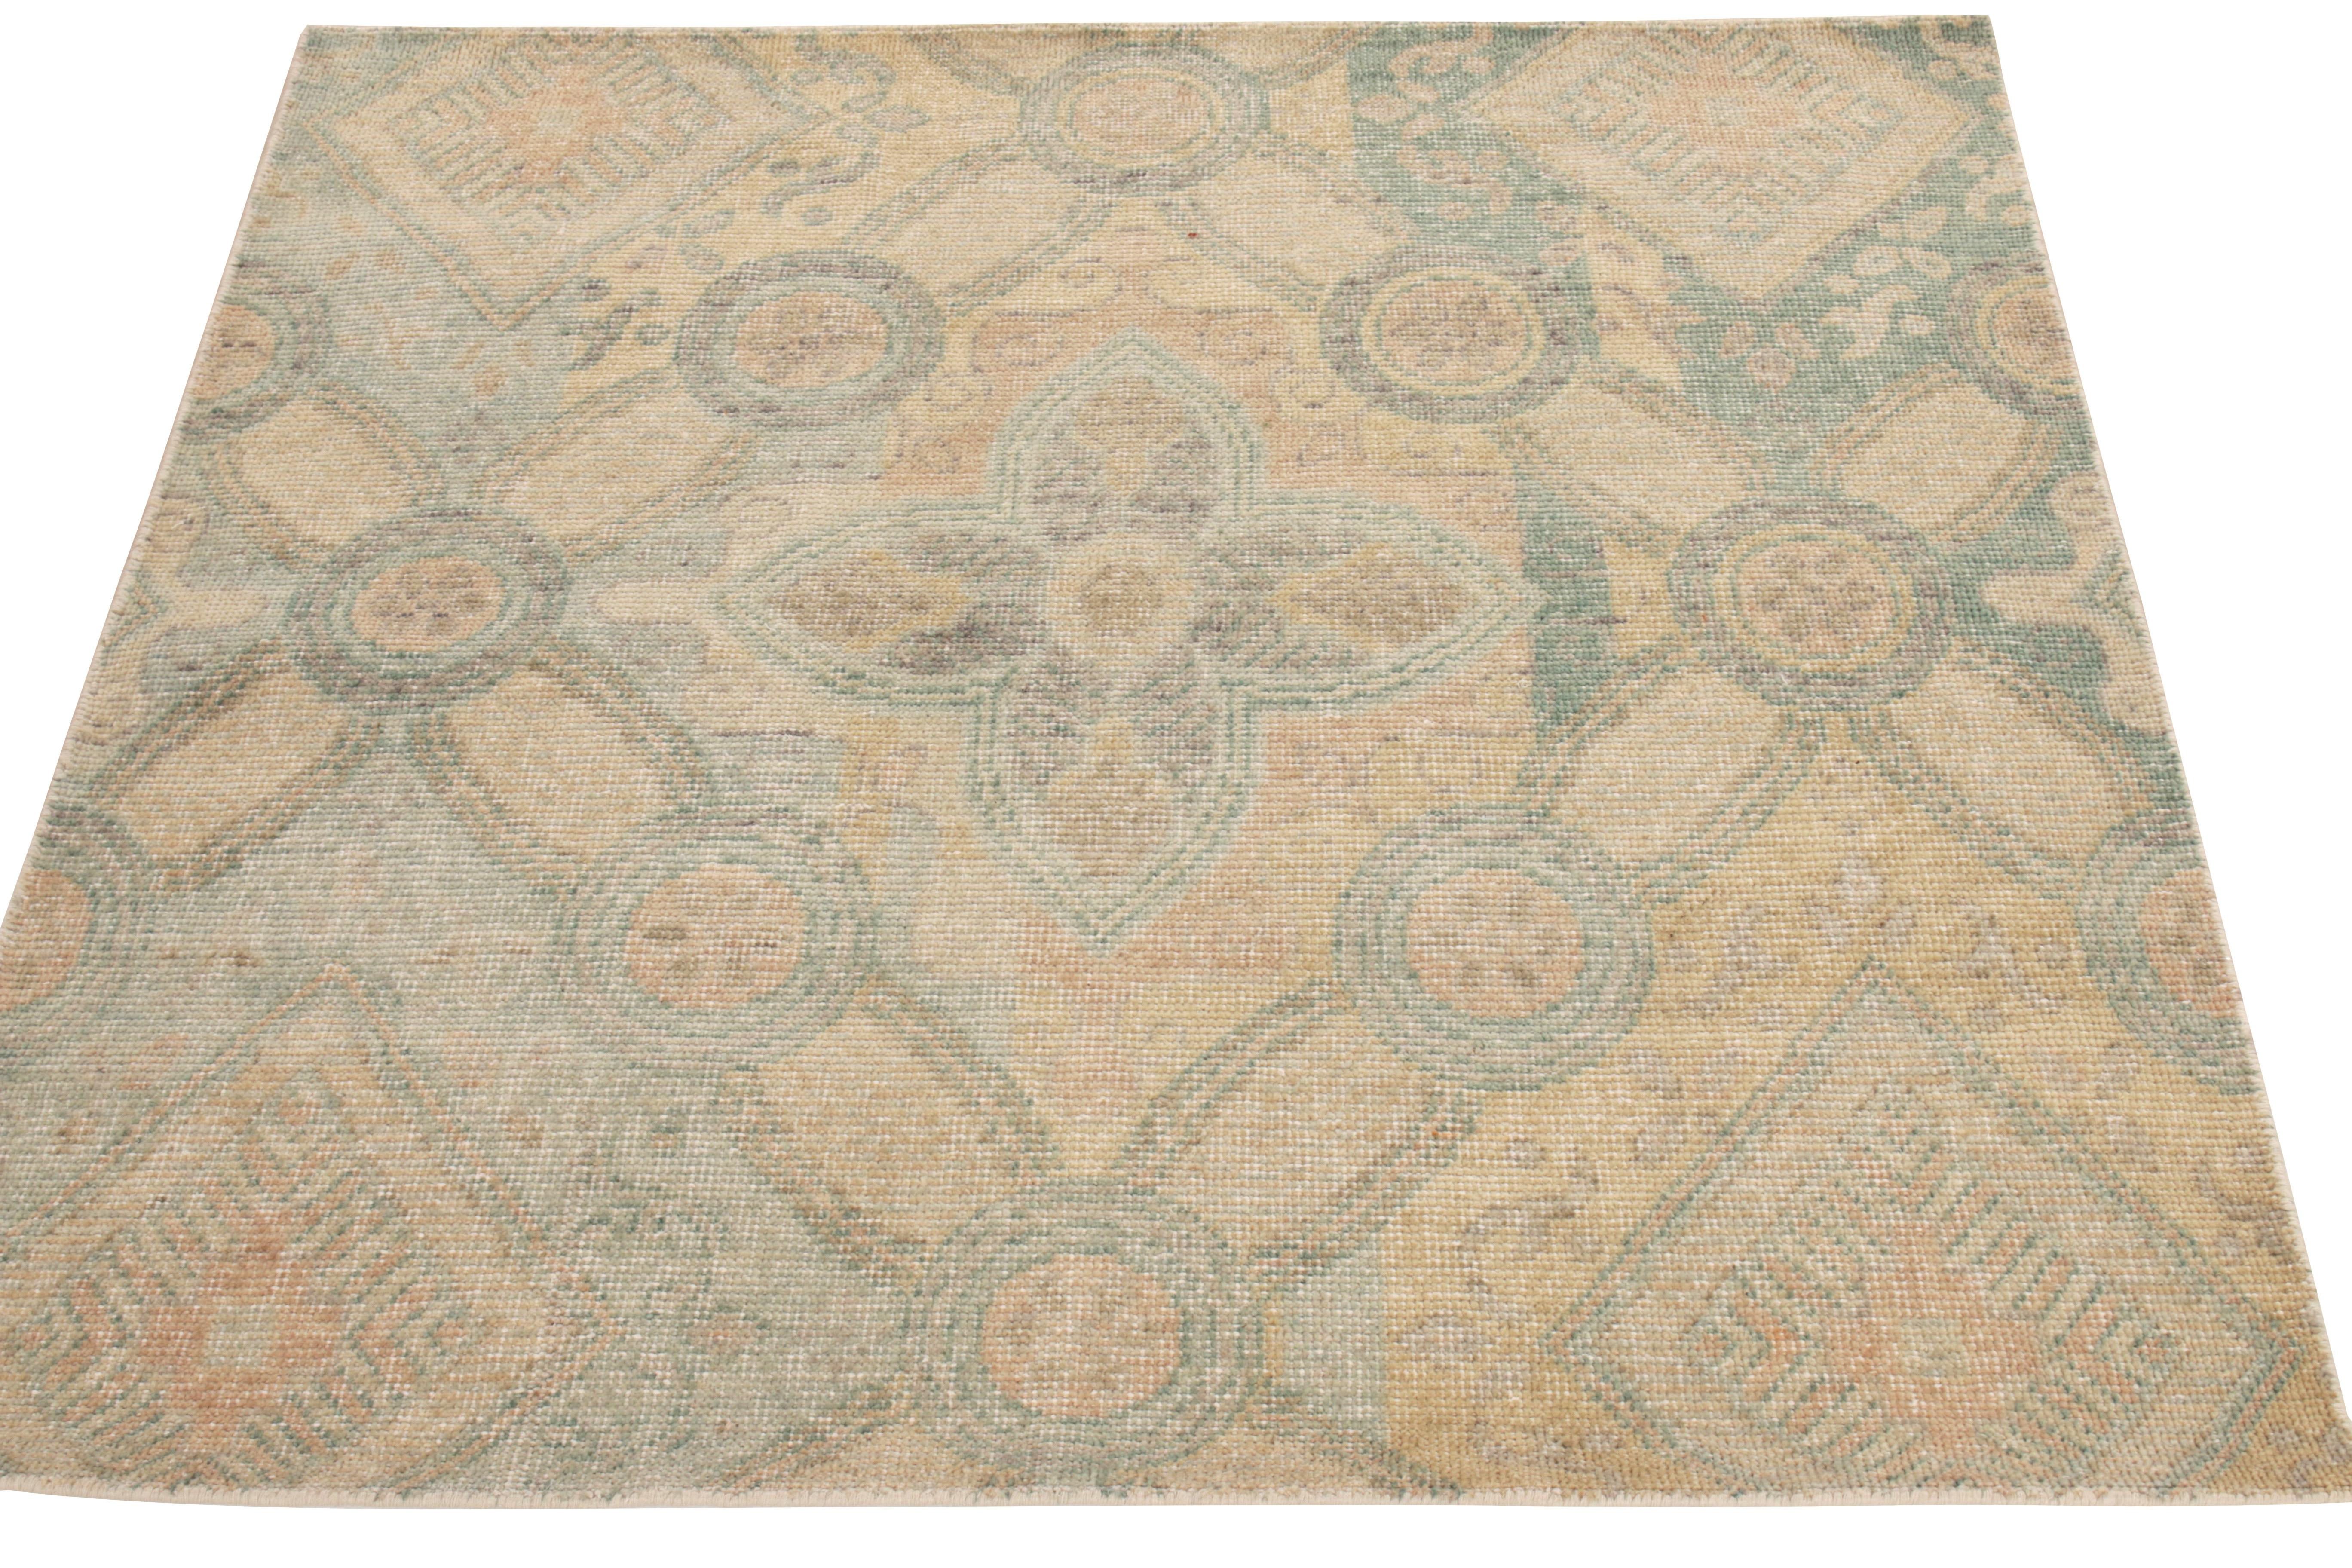 Mit einer köstlichen Mischung aus floralen Mustern und Art-Déco-Sensibilität präsentiert Rug & Kilim diesen Teppich im Distressed-Stil aus seiner Homage Collection. Die 6x8 großen, handgeknüpften Wolltücher sind mit riesigen Blumen- und